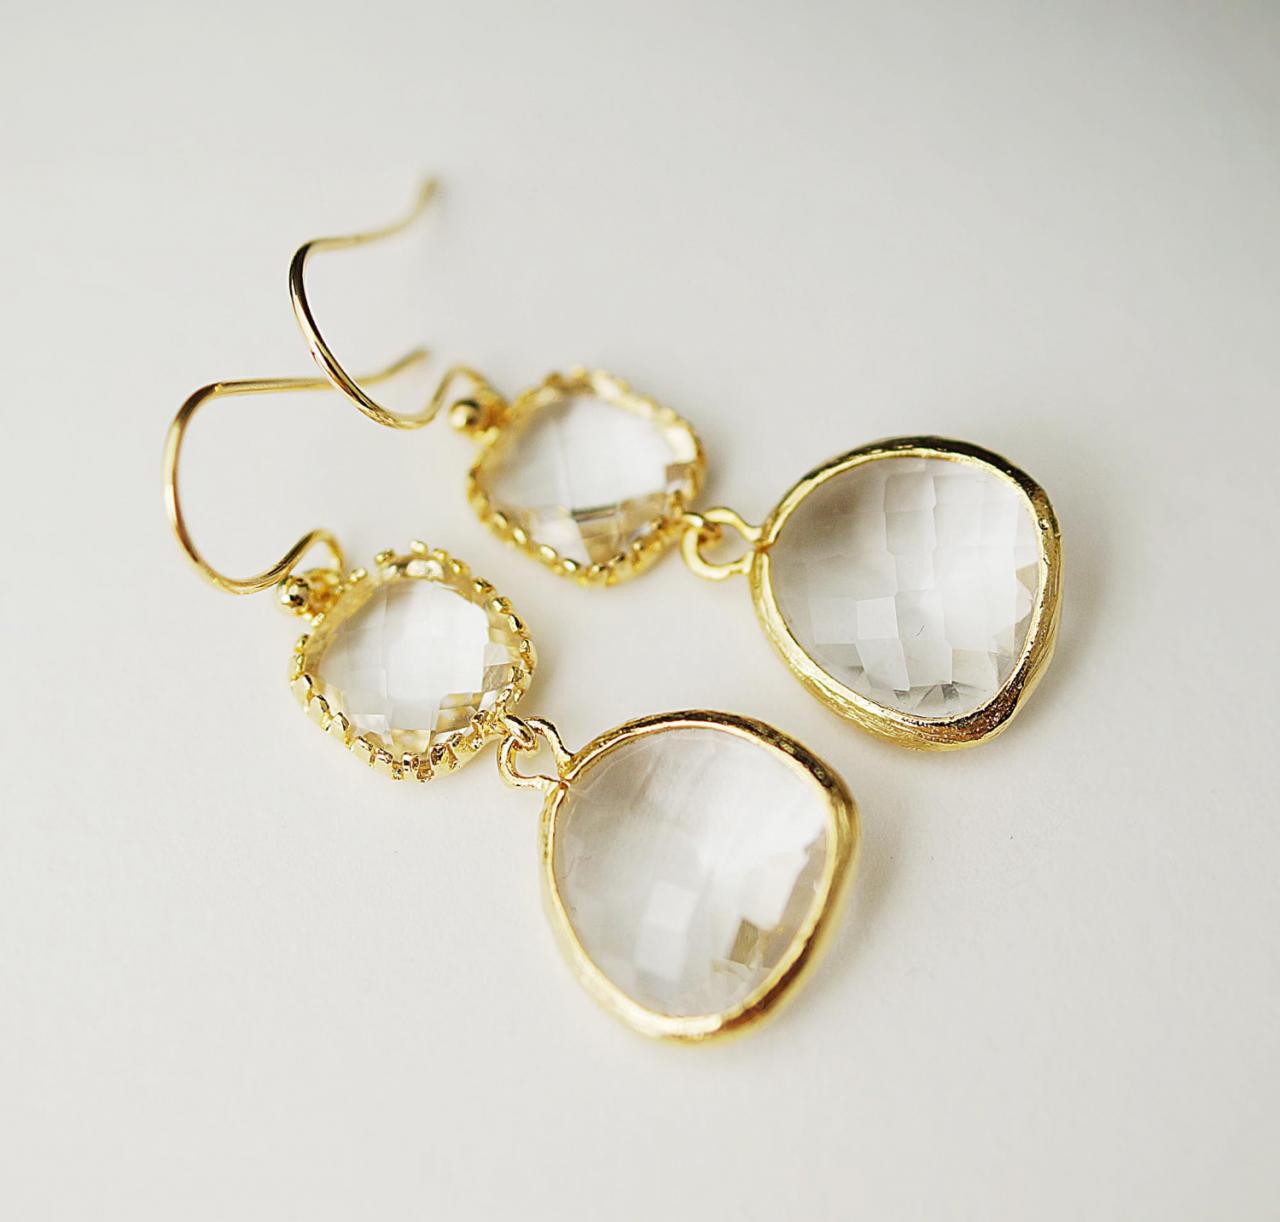 Wedding Jewelry Bridesmaid Earrings Dangle Earrings Gold Framed Clear White Glass Drop Earrings